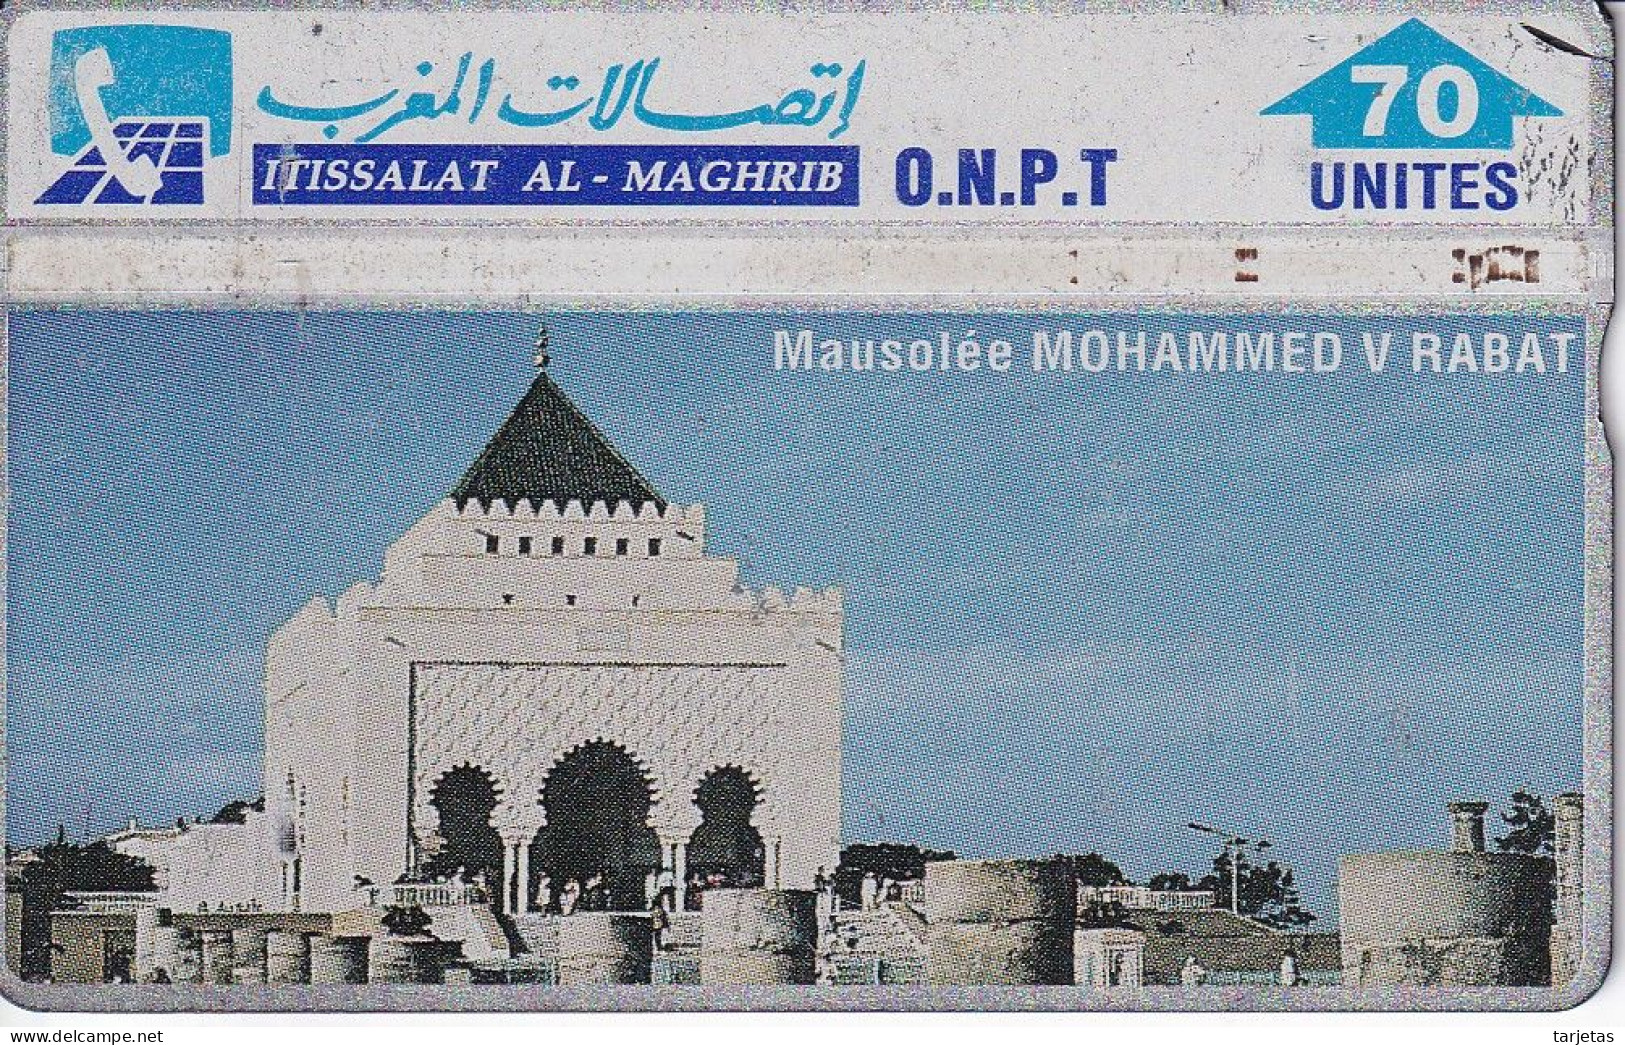 TARJETA DE MARRUECOS DE 70 UNITES MAUSOLEE MOHAMMED V RABAT (310E) - Maroc